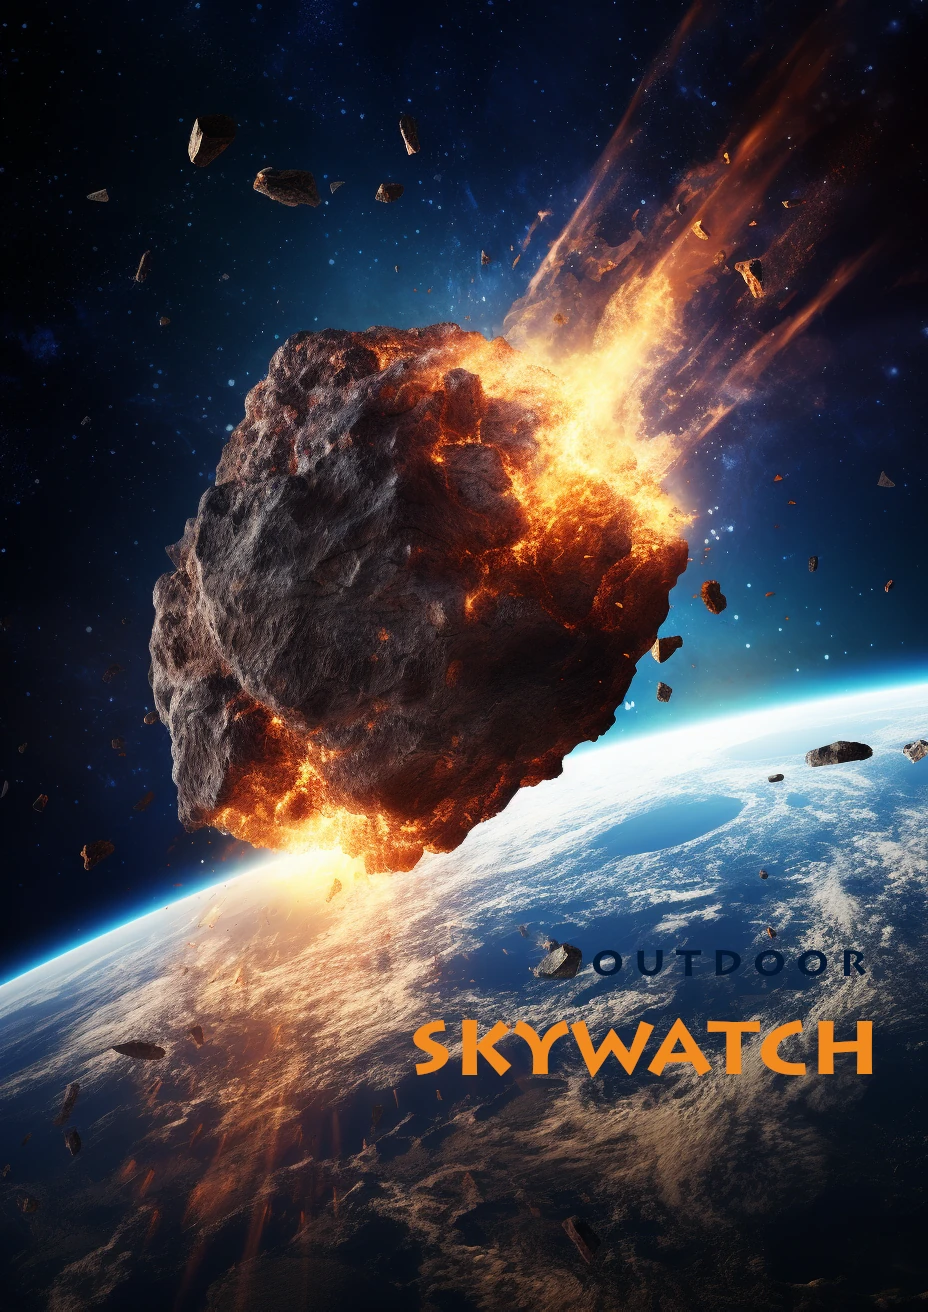 skywatch poster